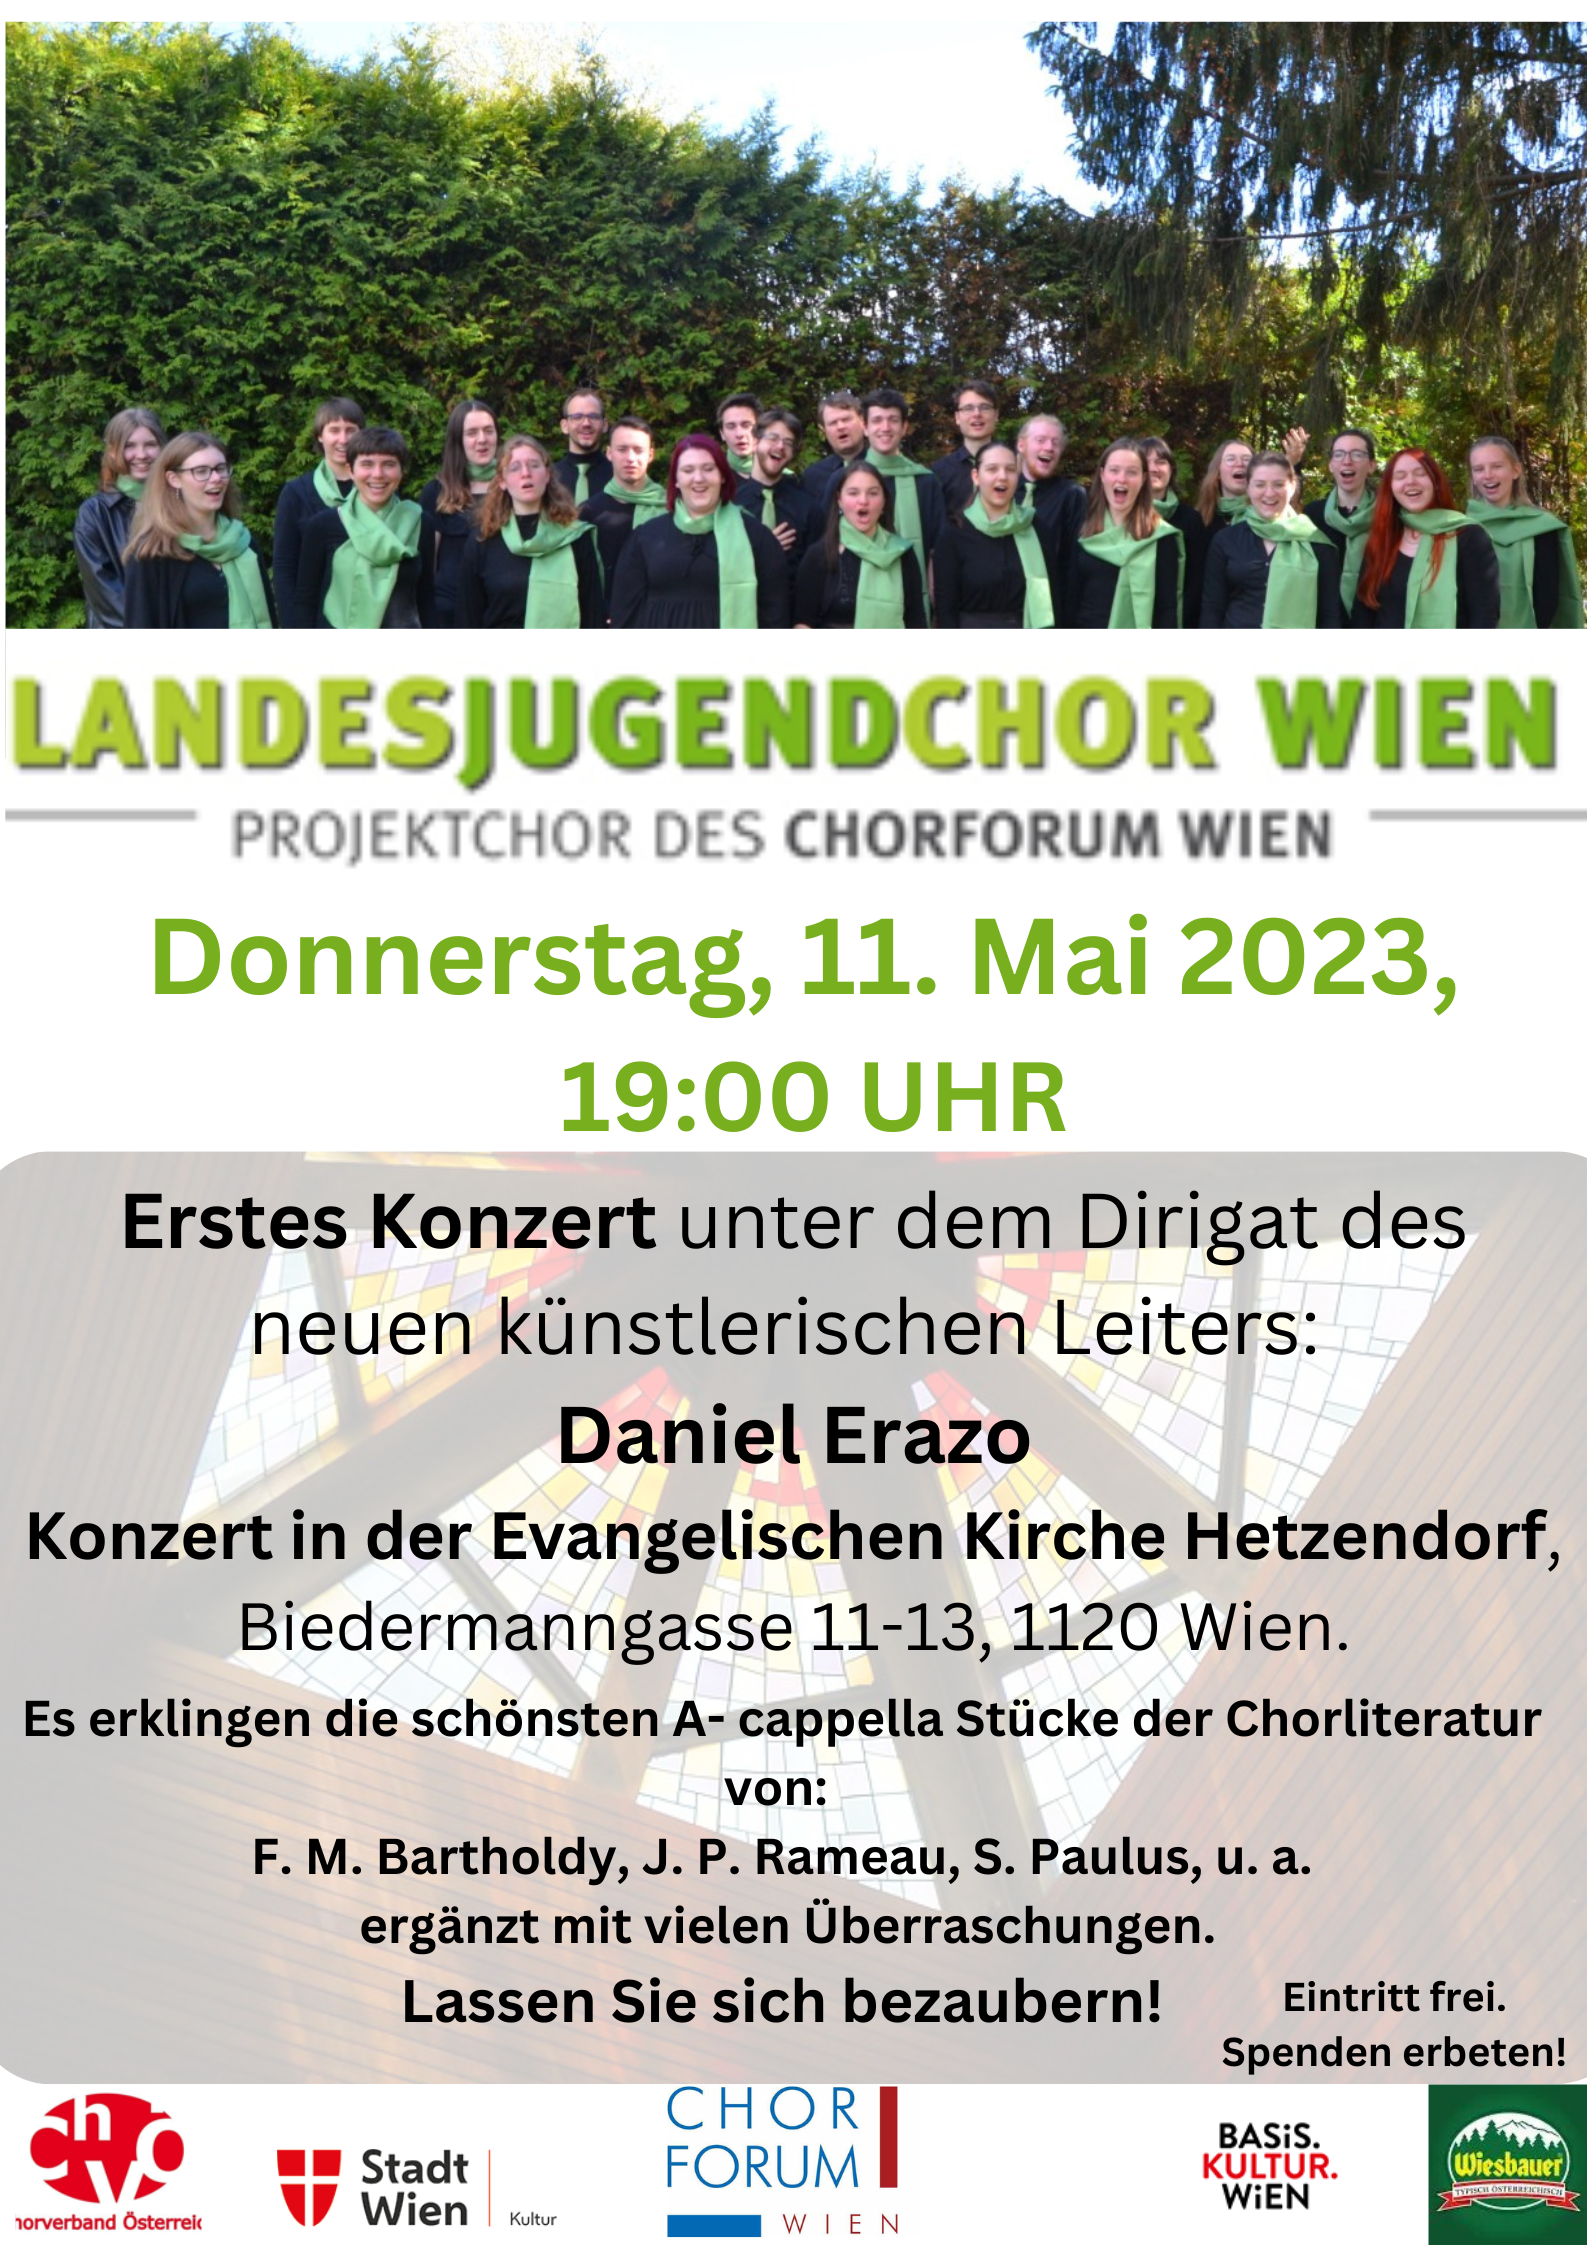 Landesjugendchor Wien - ein Projektchor des ChorForum Wien